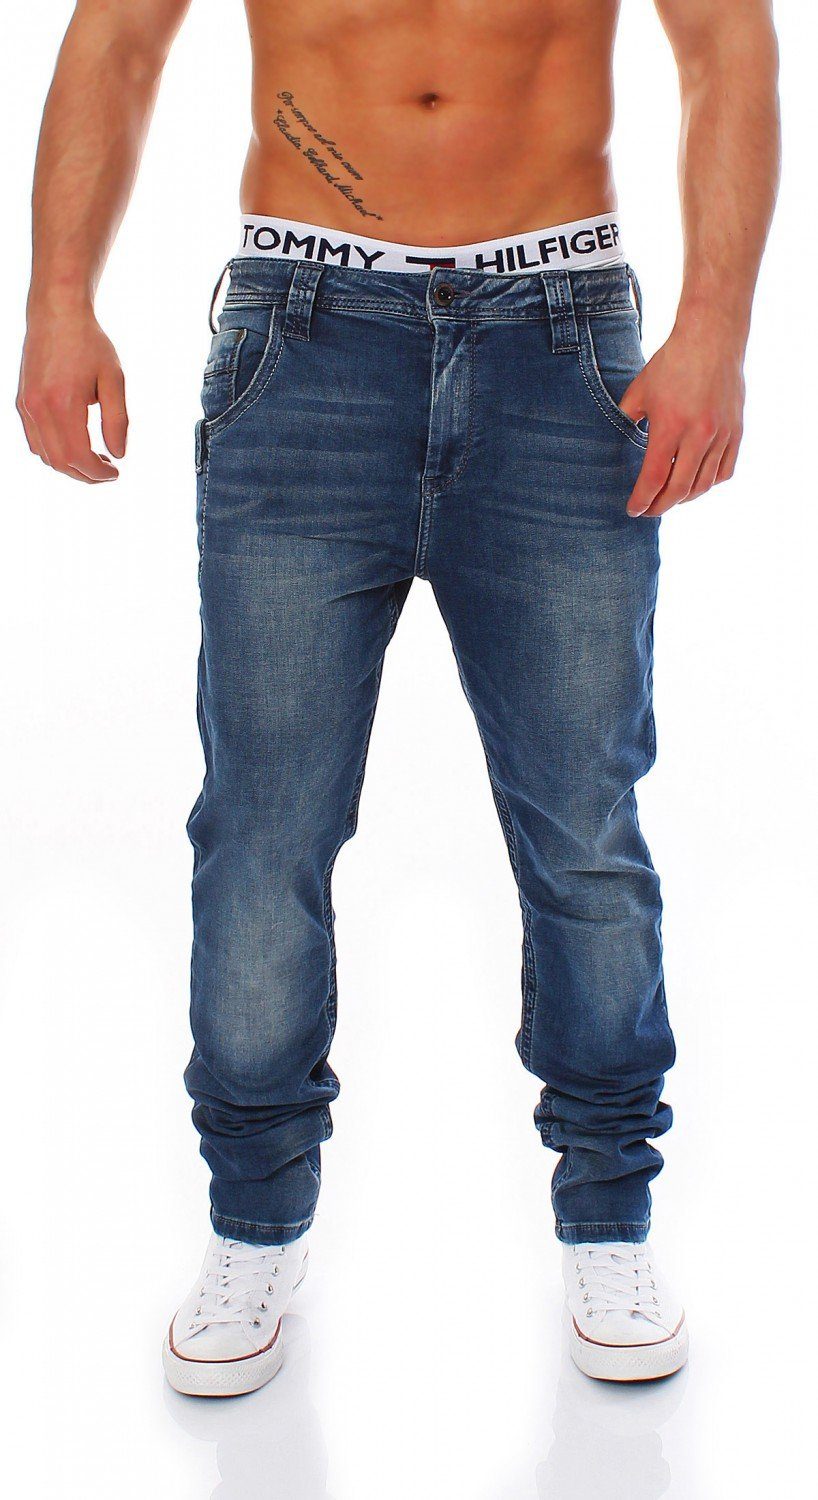 & - BAXX Cipo CIPO C-1194 - - Hose Baxx Men Slim-fit-Jeans Slim / Herren Fit & Jeans